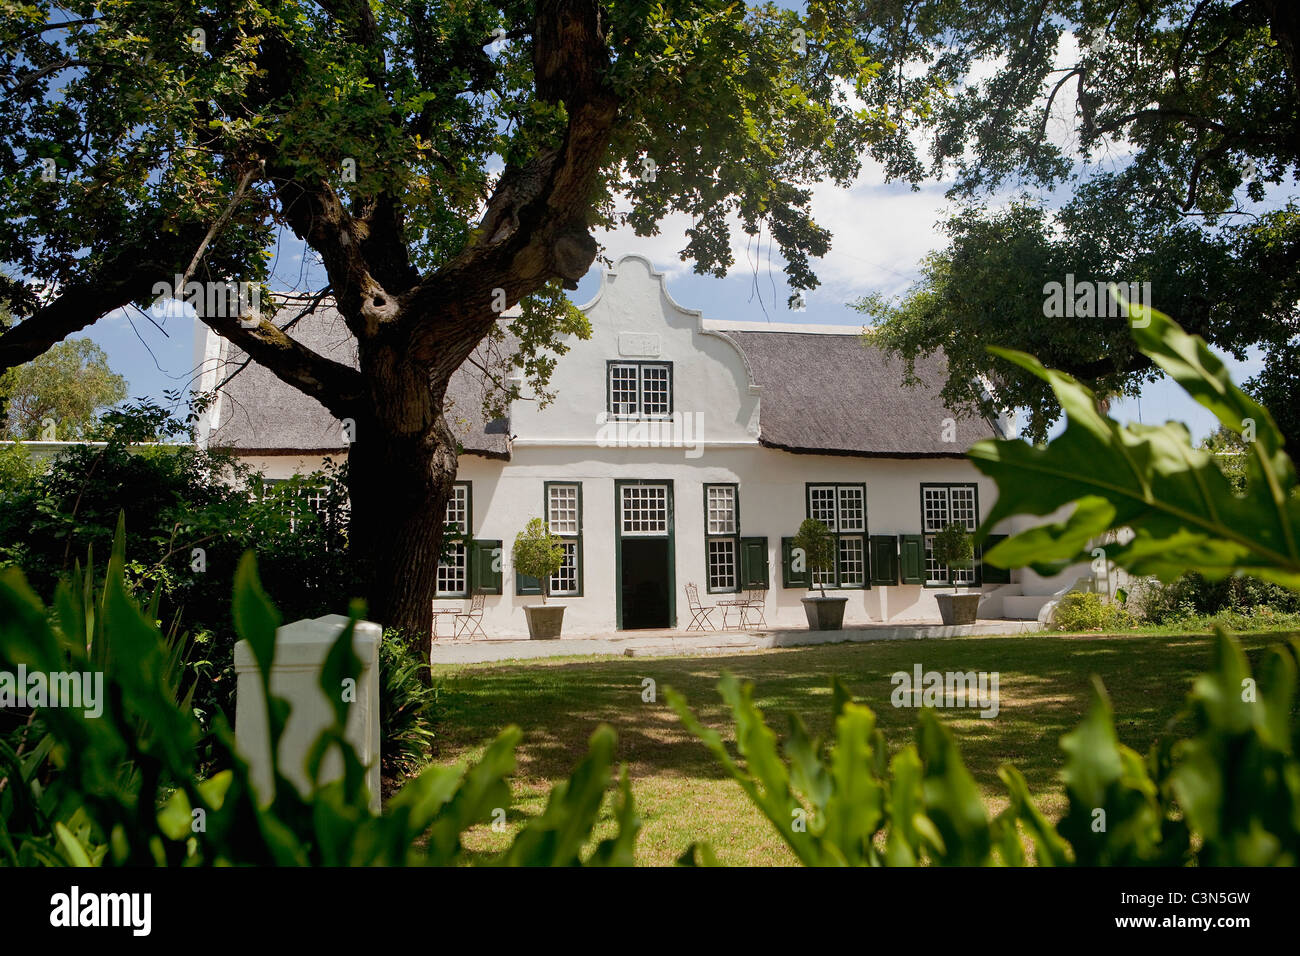 Südafrika, Western Cape, in der Nähe von Stellenbosch, Hawksmoor House Gästehaus. Kap-holländische Architektur. Stockfoto